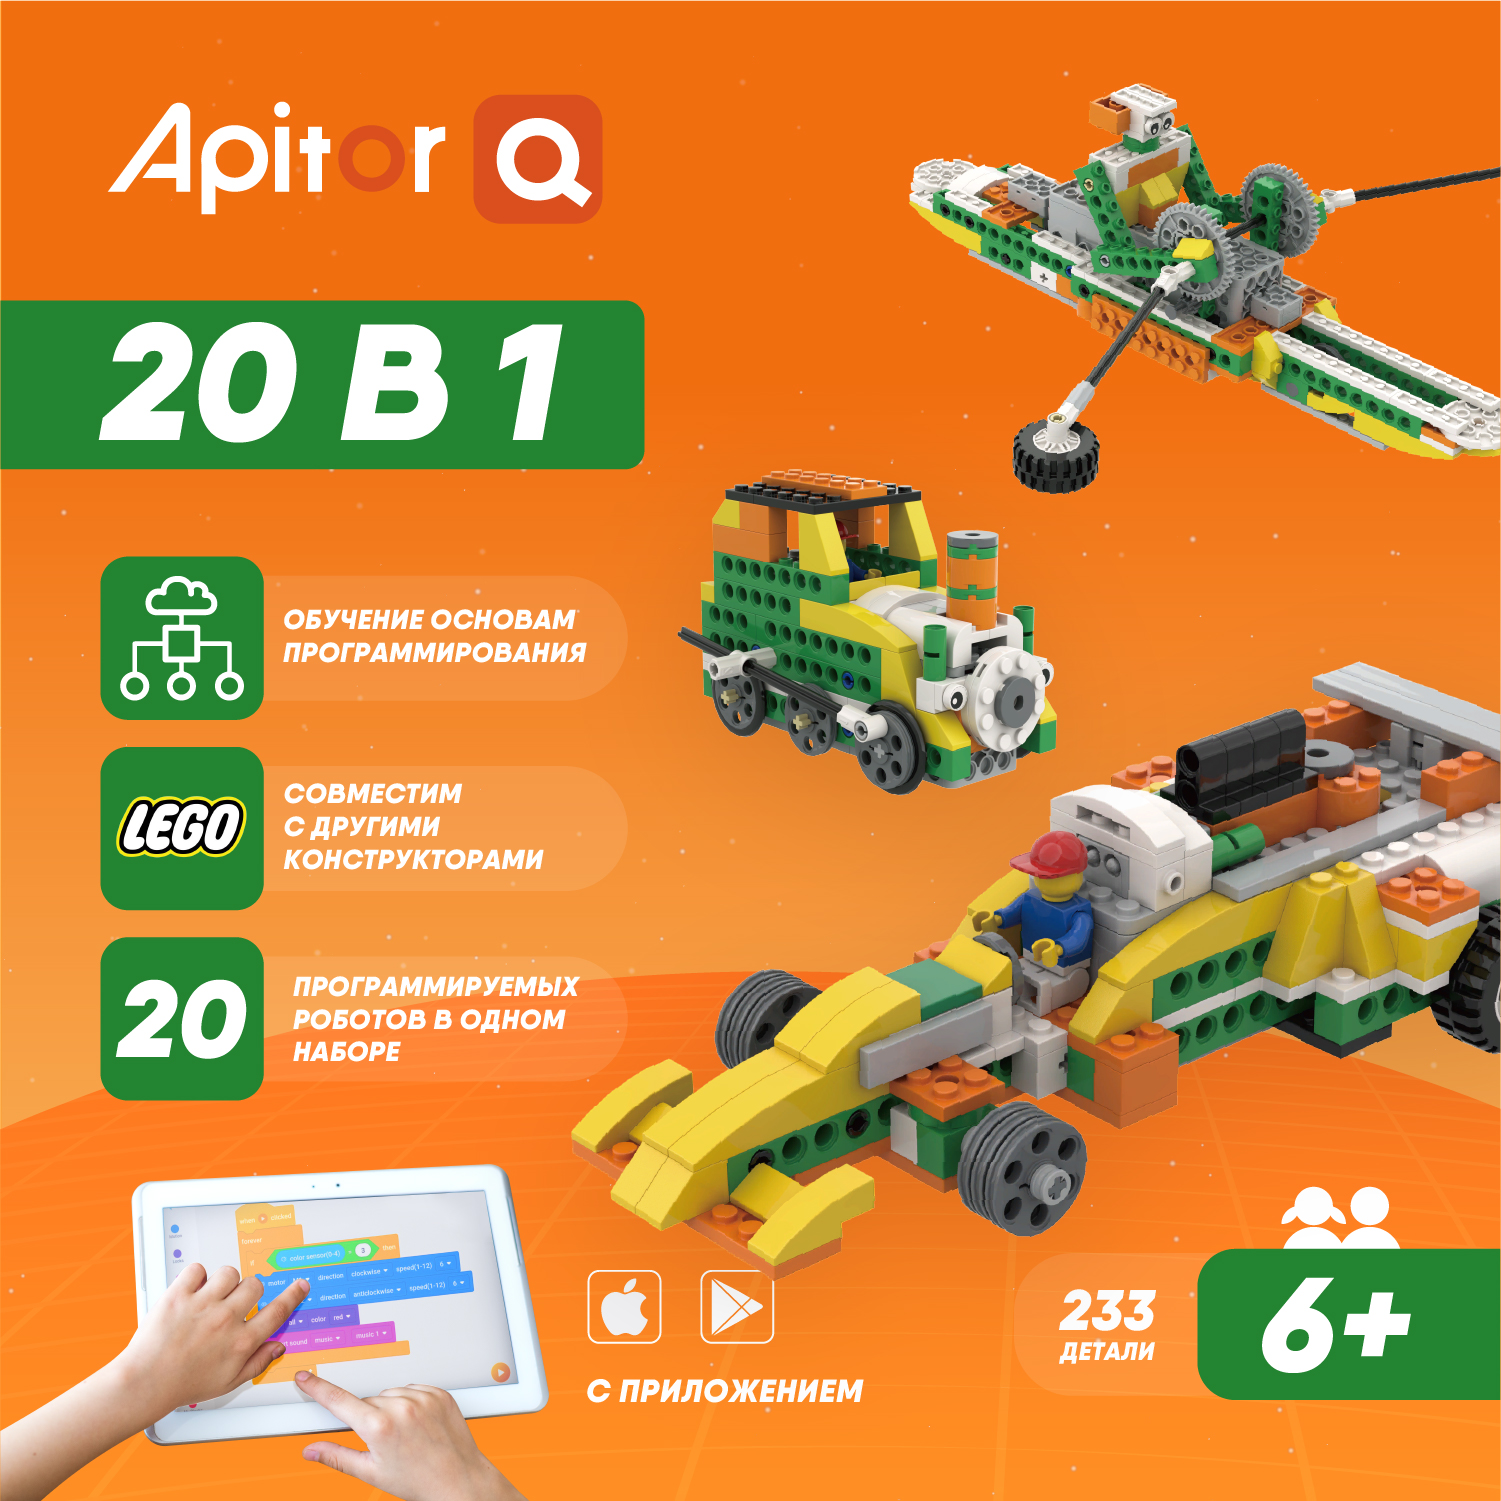 Электронный программируемый детский робот конструктор Apitor Robot Q 20 моделей в 1